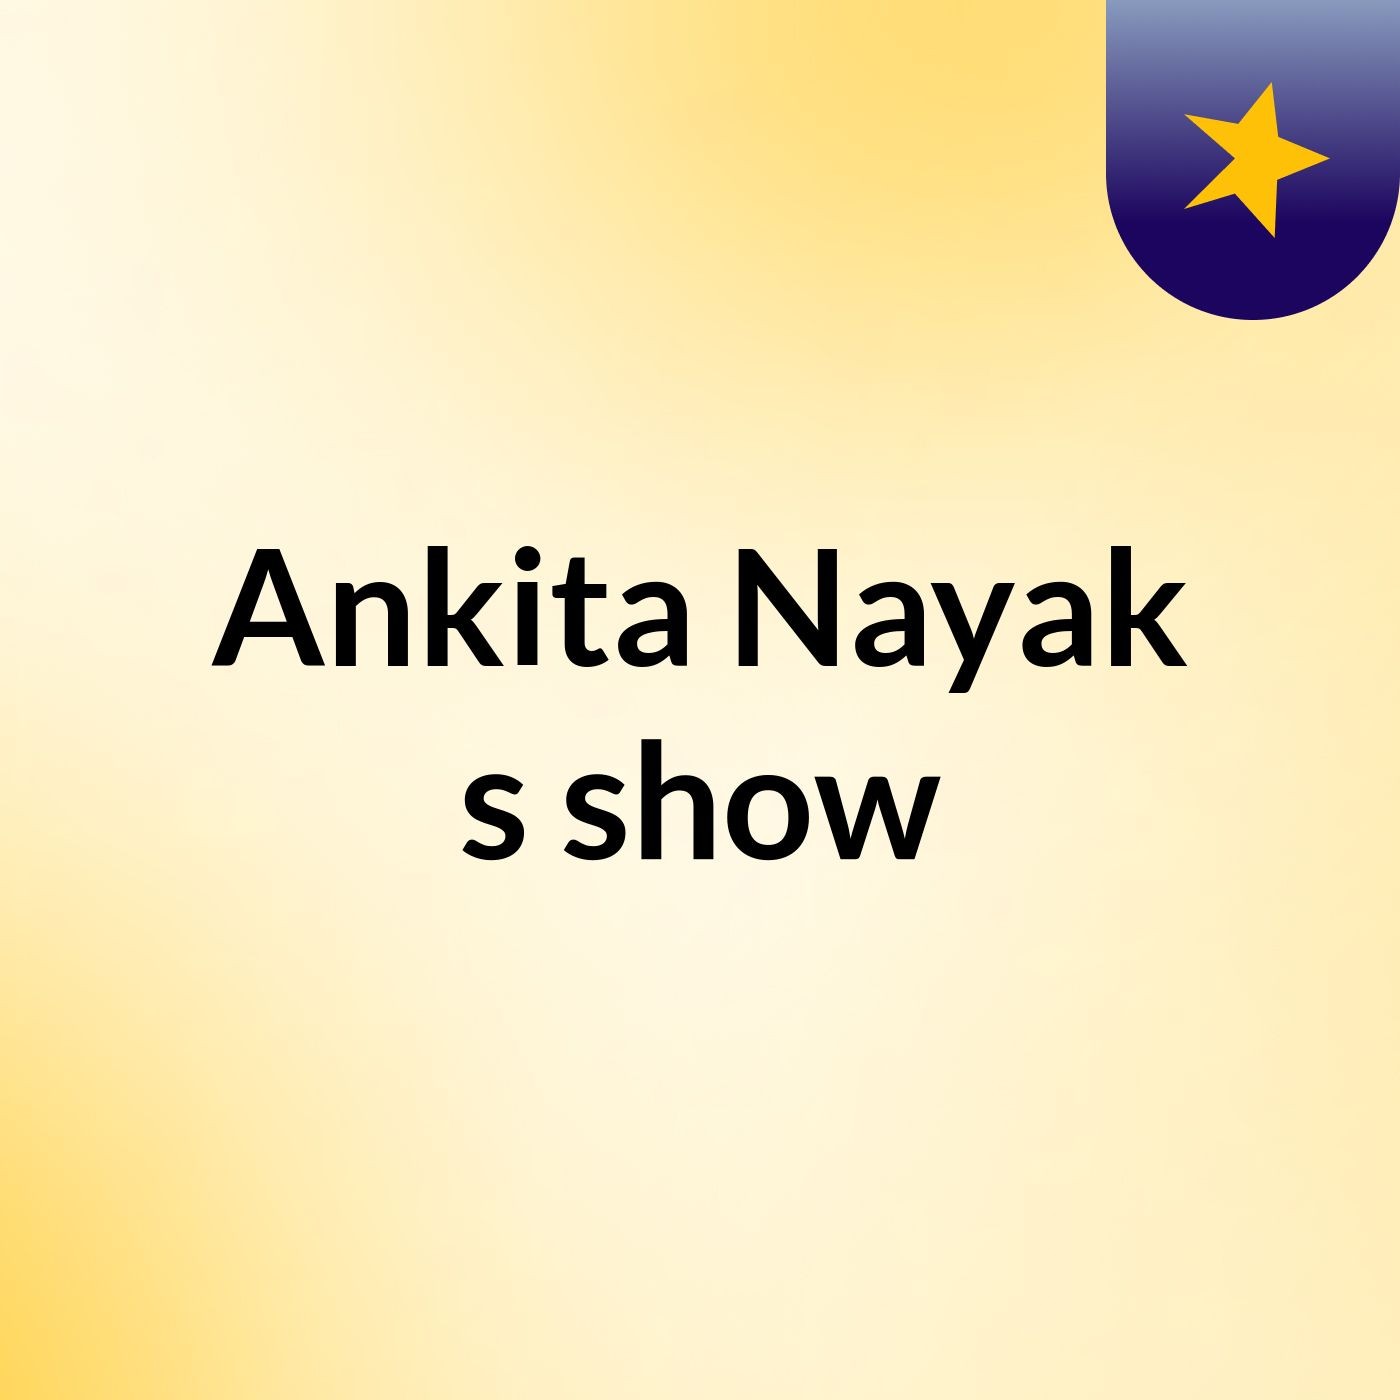 Ankita Nayak's show